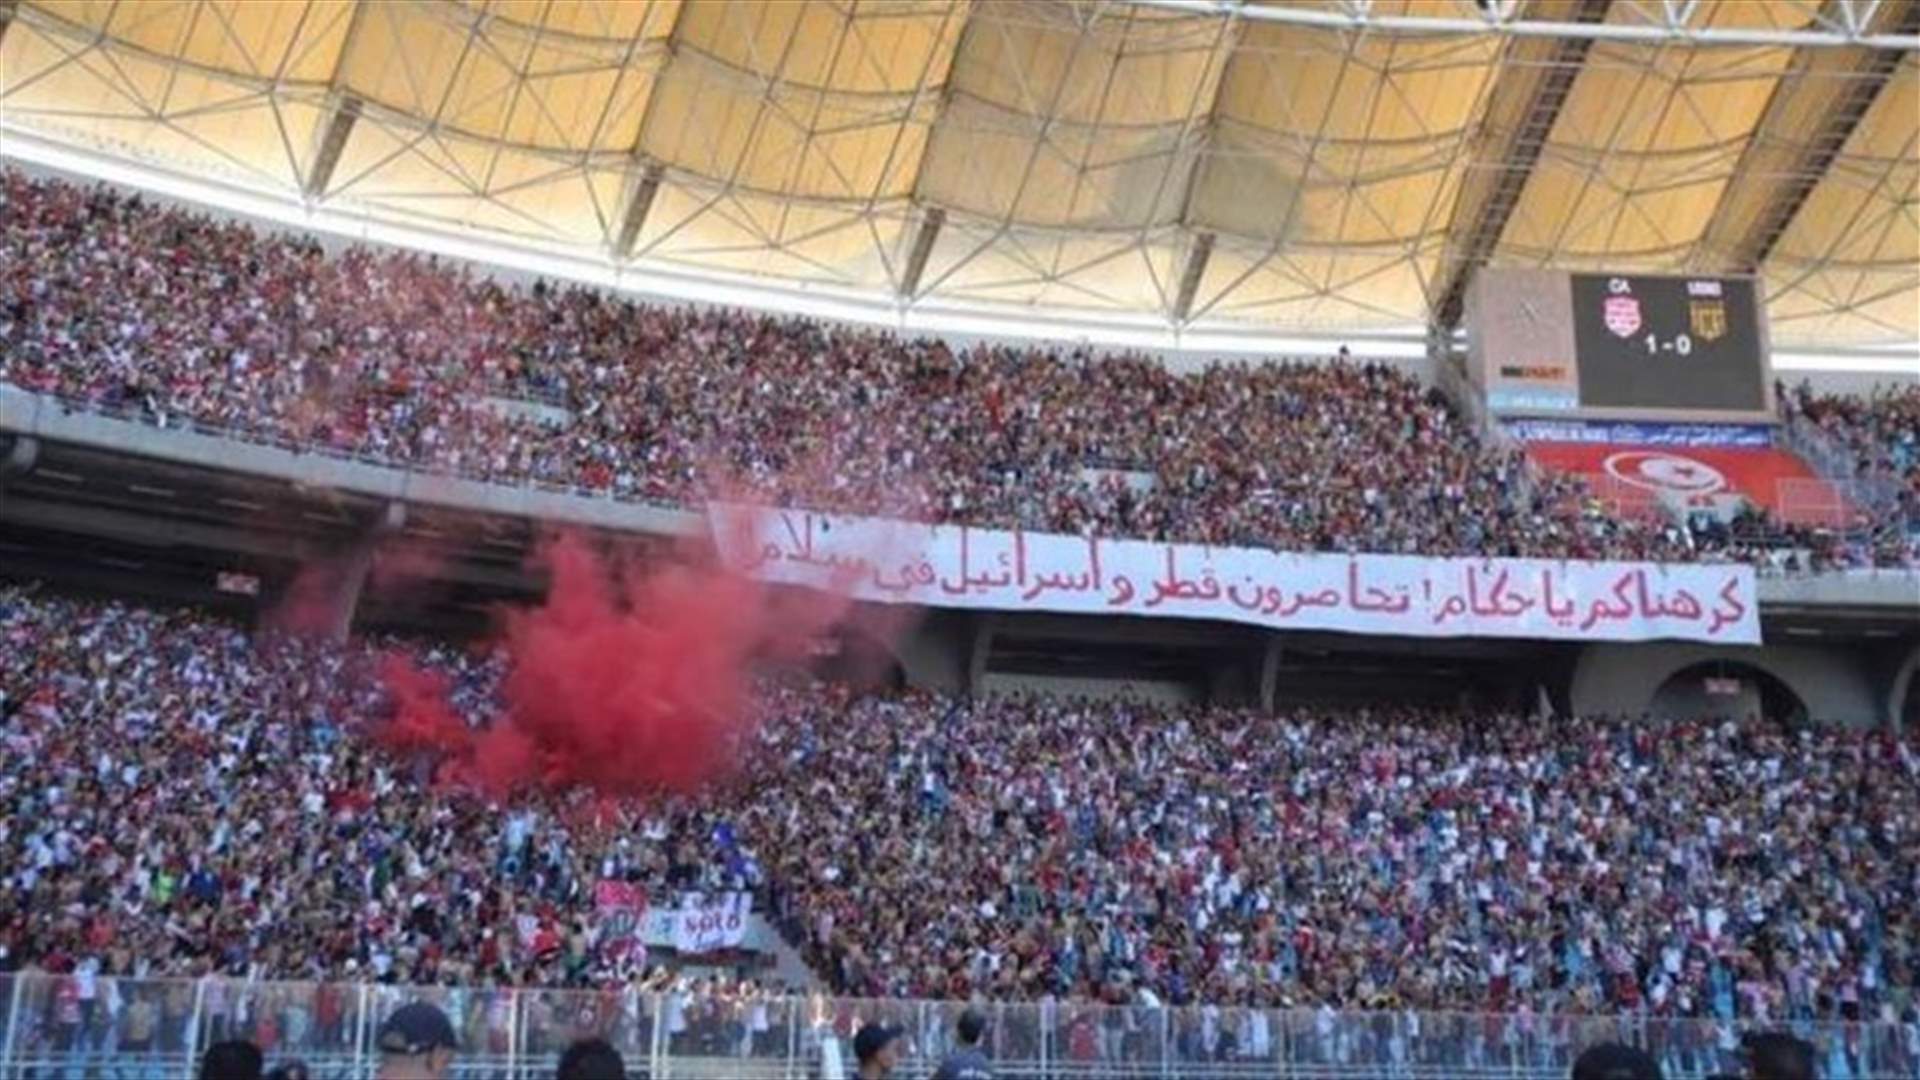 فتح تحقيق في رفع لافتة مؤيدة لقطر خلال نهائي كأس تونس